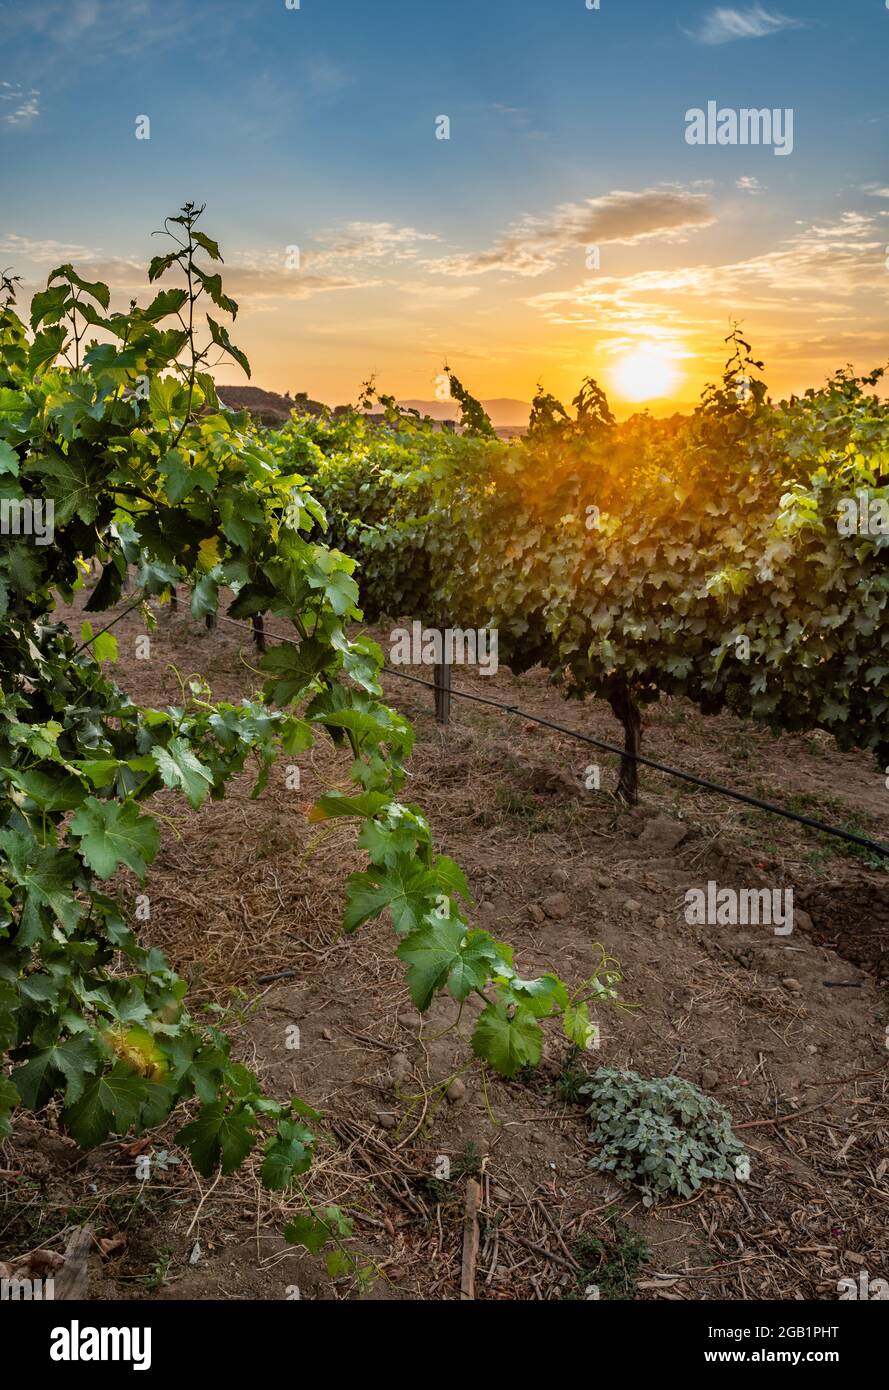 Beautiful winery in Temecula, California Stock Photo